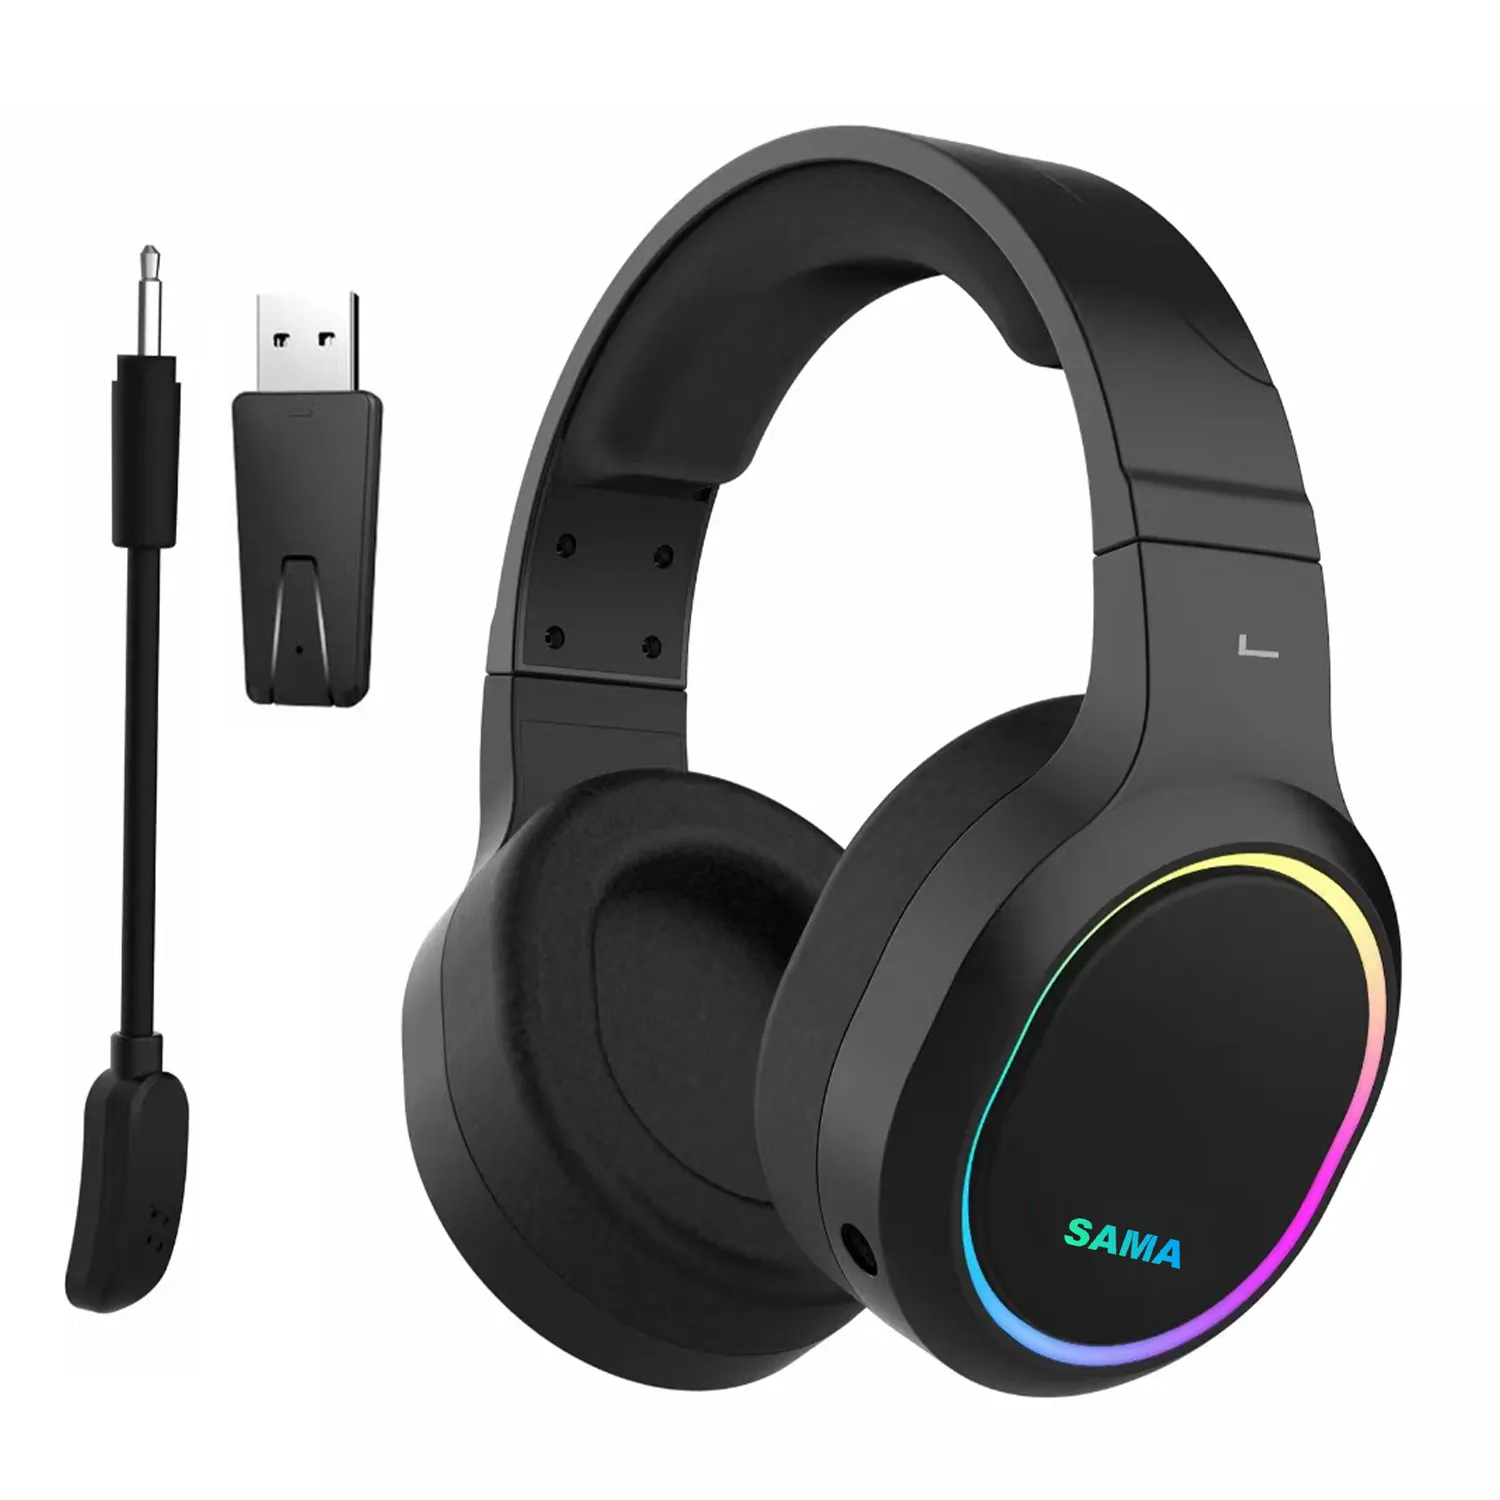 SAMA dengan OEM Headphone Over-Ear Nirkabel Headphone Inalambricos Ps4 Ps5 X-box Satu Headset Gaming Nirkabel dengan Mikrofon